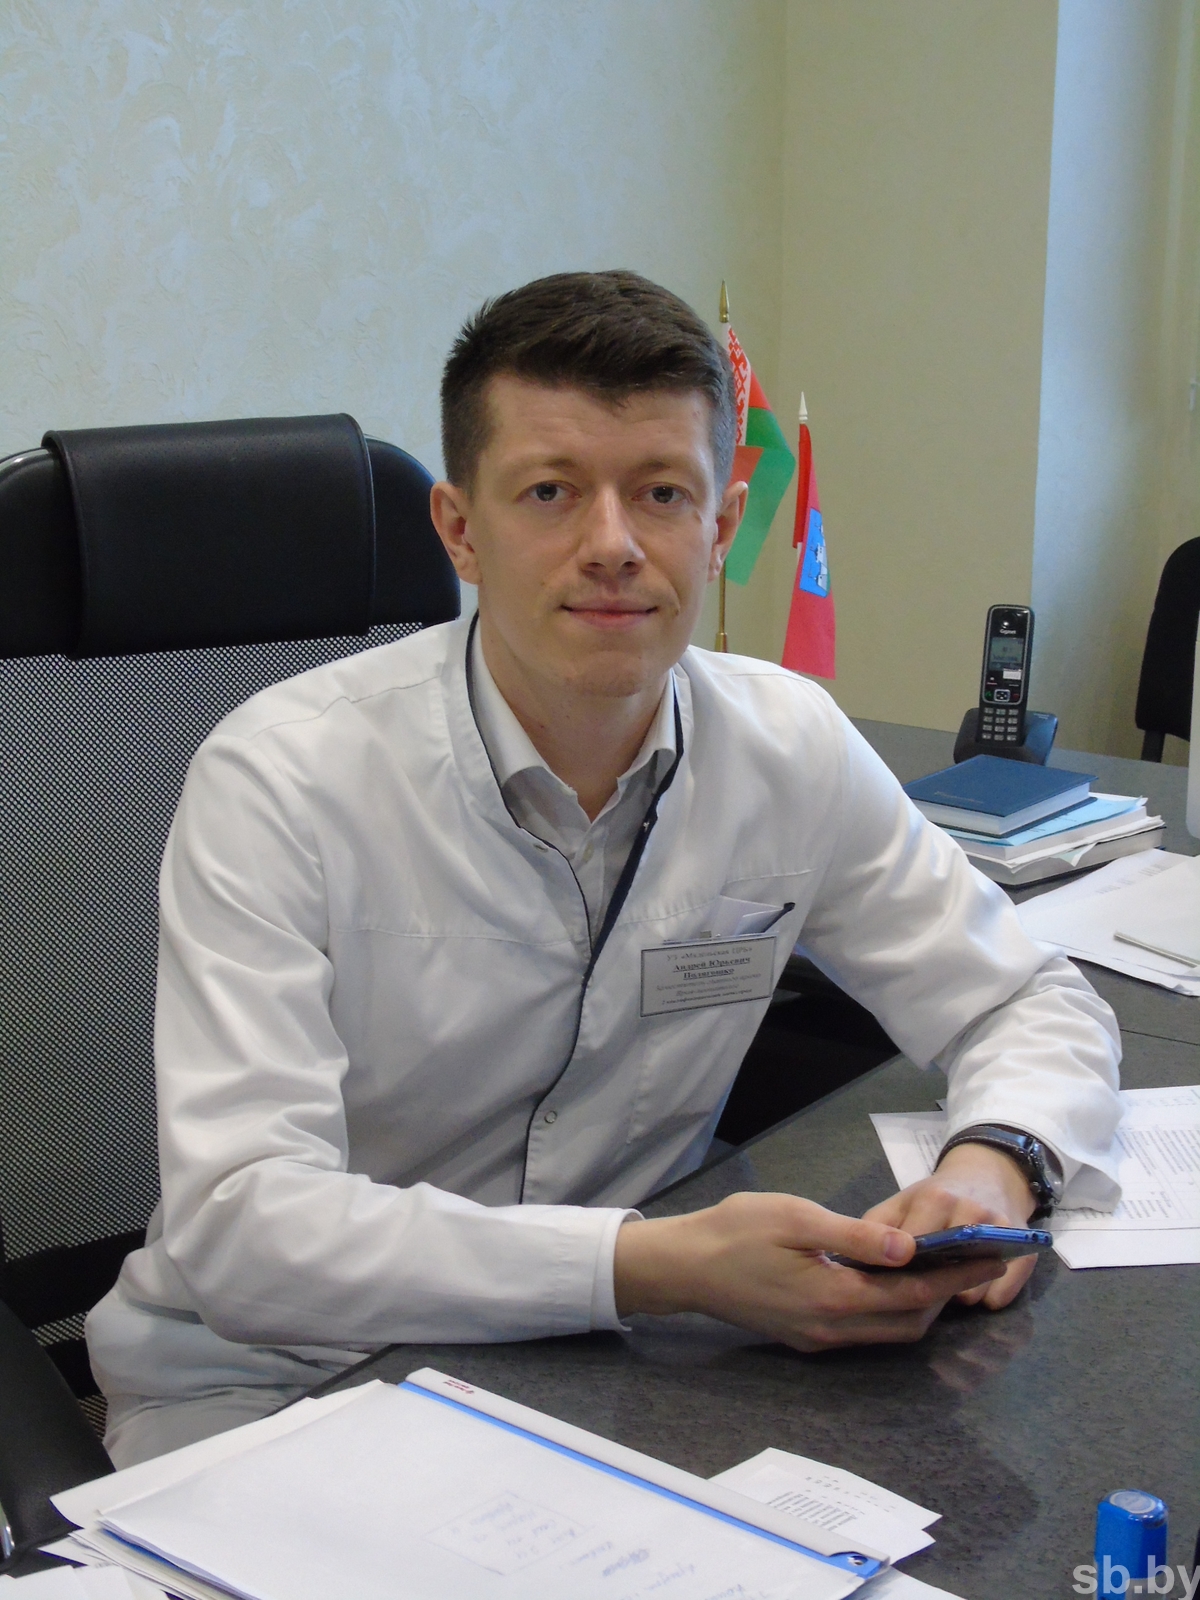 Андрей Полягошко: «Если прививке более полугода, антител может не остаться. Нужна ревакцинация»